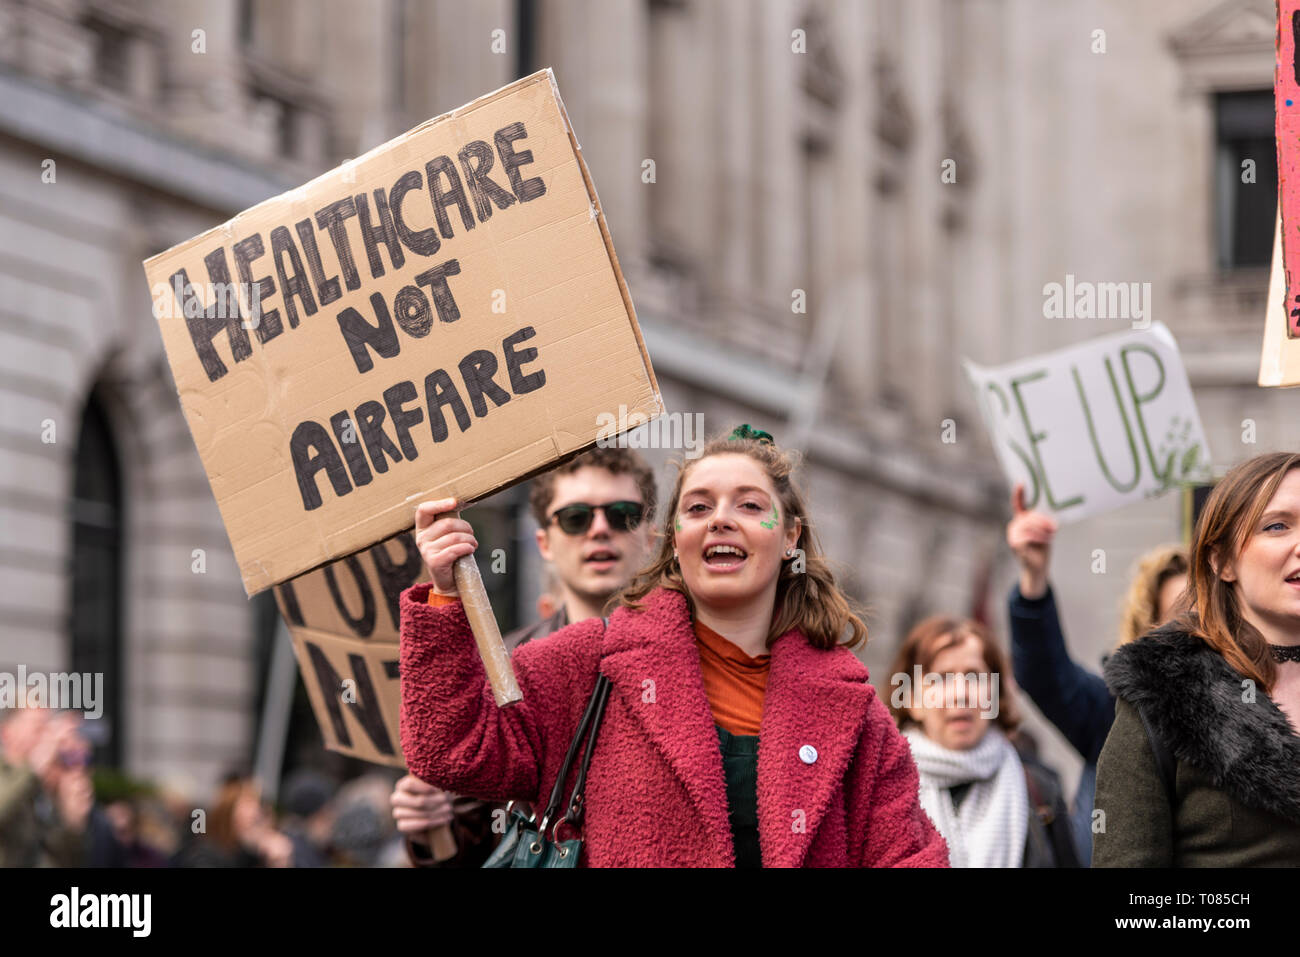 London Irish Abtreibung Rechte Kampagne Frauen an der St. Patrick's Day Parade London 2019. Demonstrieren. Plakat healthcare nicht airfare Stockfoto